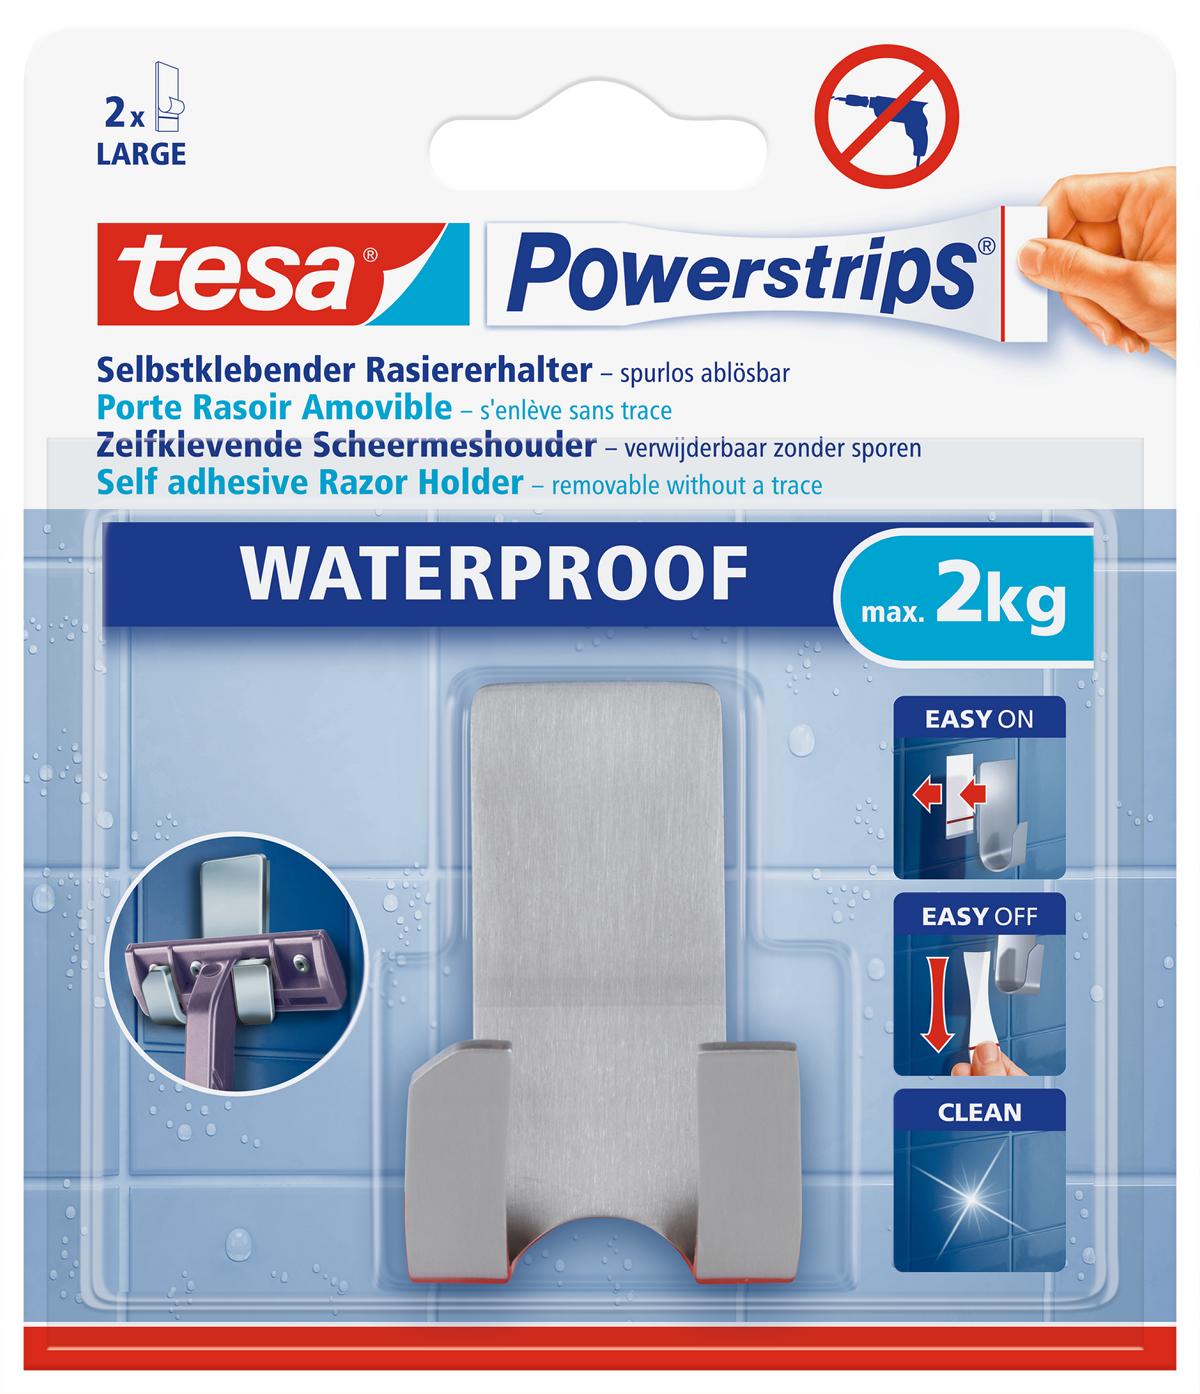 tesa Powerstrips Selbstklebeneder Rasiererhalter Waterproof  Zoom, Metall